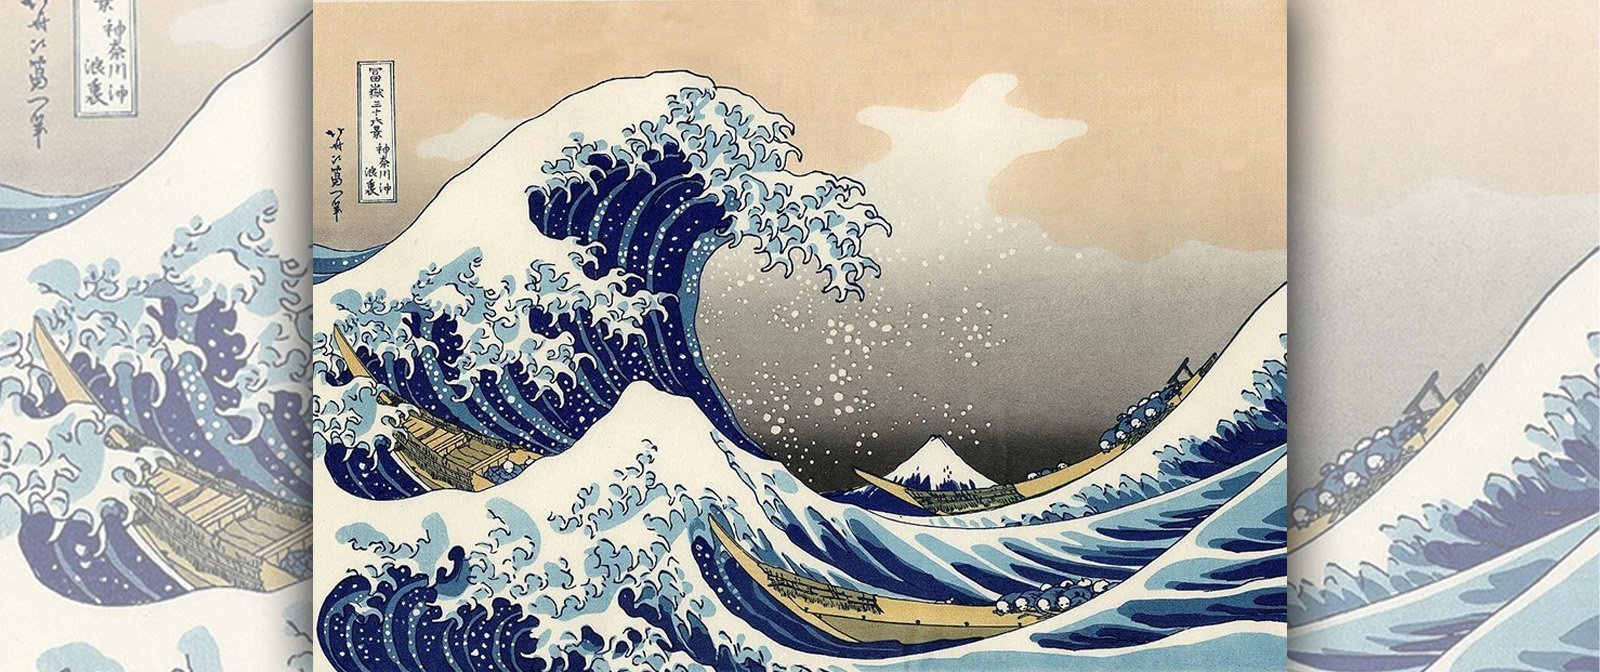 Японский художник, написавший гравюру, которая потрясла европейцев. «Большая волна» Хокусая, и её скрытый смысл.